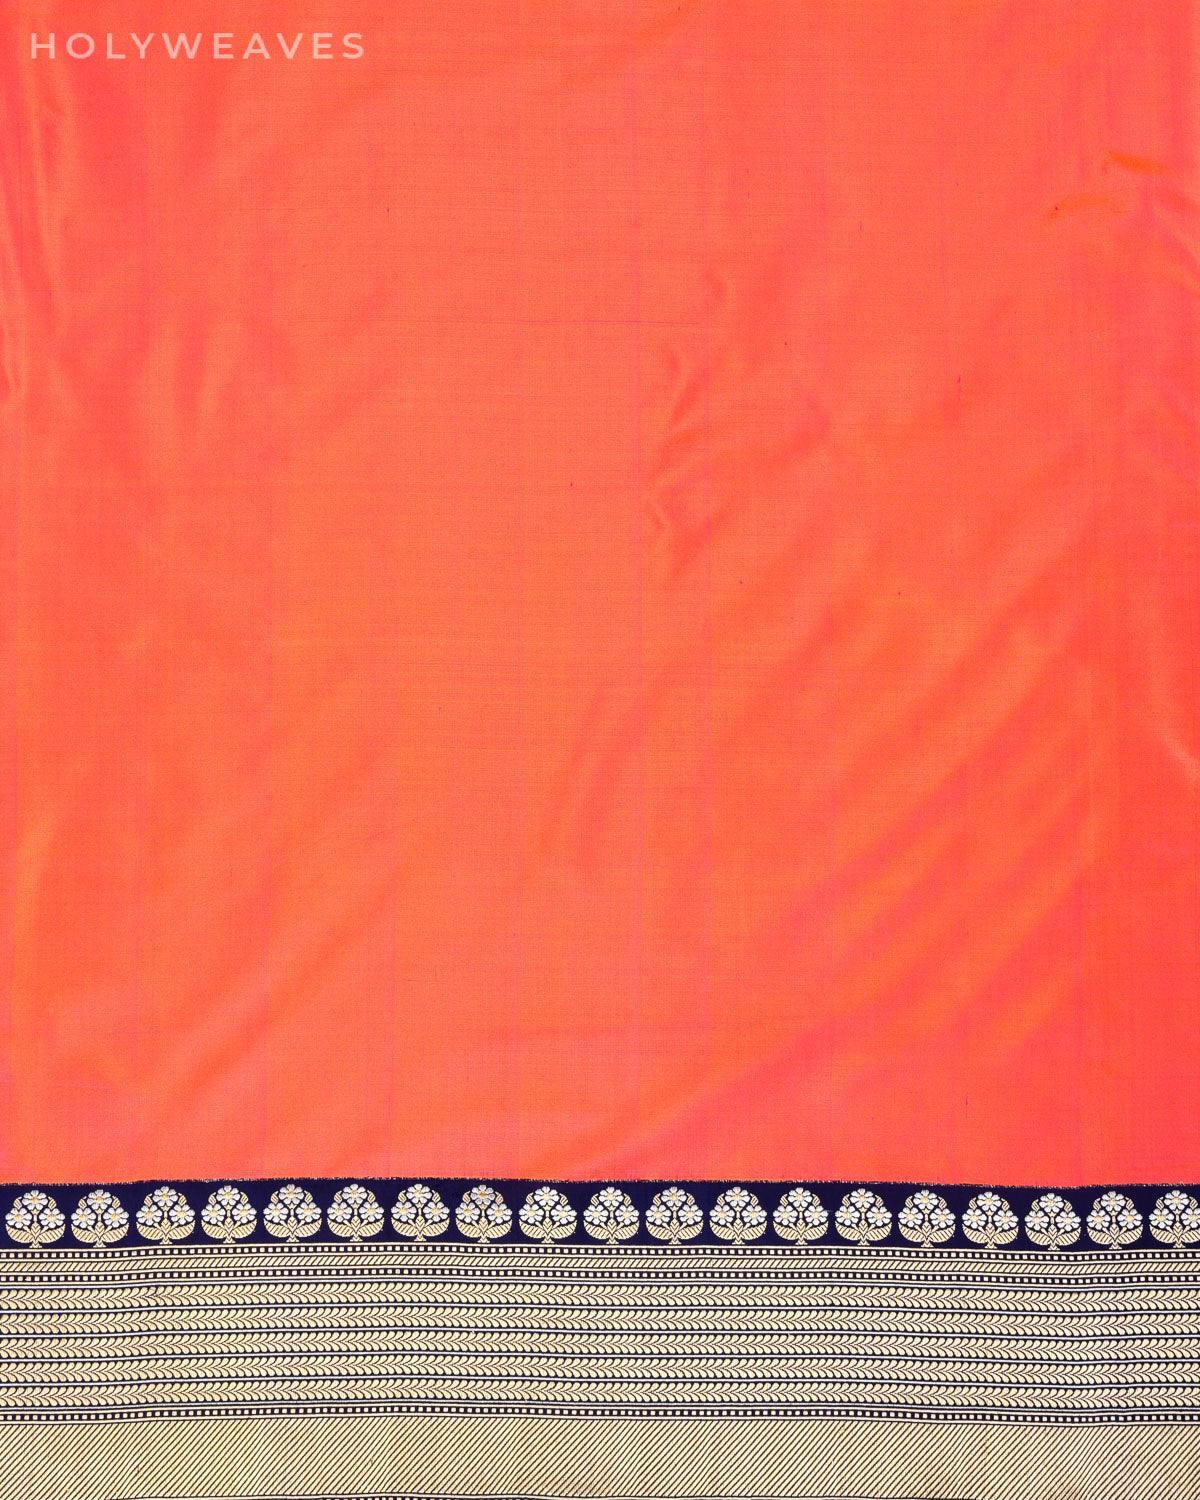 Shot Orange Peach Banarasi Kadhuan Brocade Handwoven Katan Silk Saree with Brocade Blouse Piece - By HolyWeaves, Benares